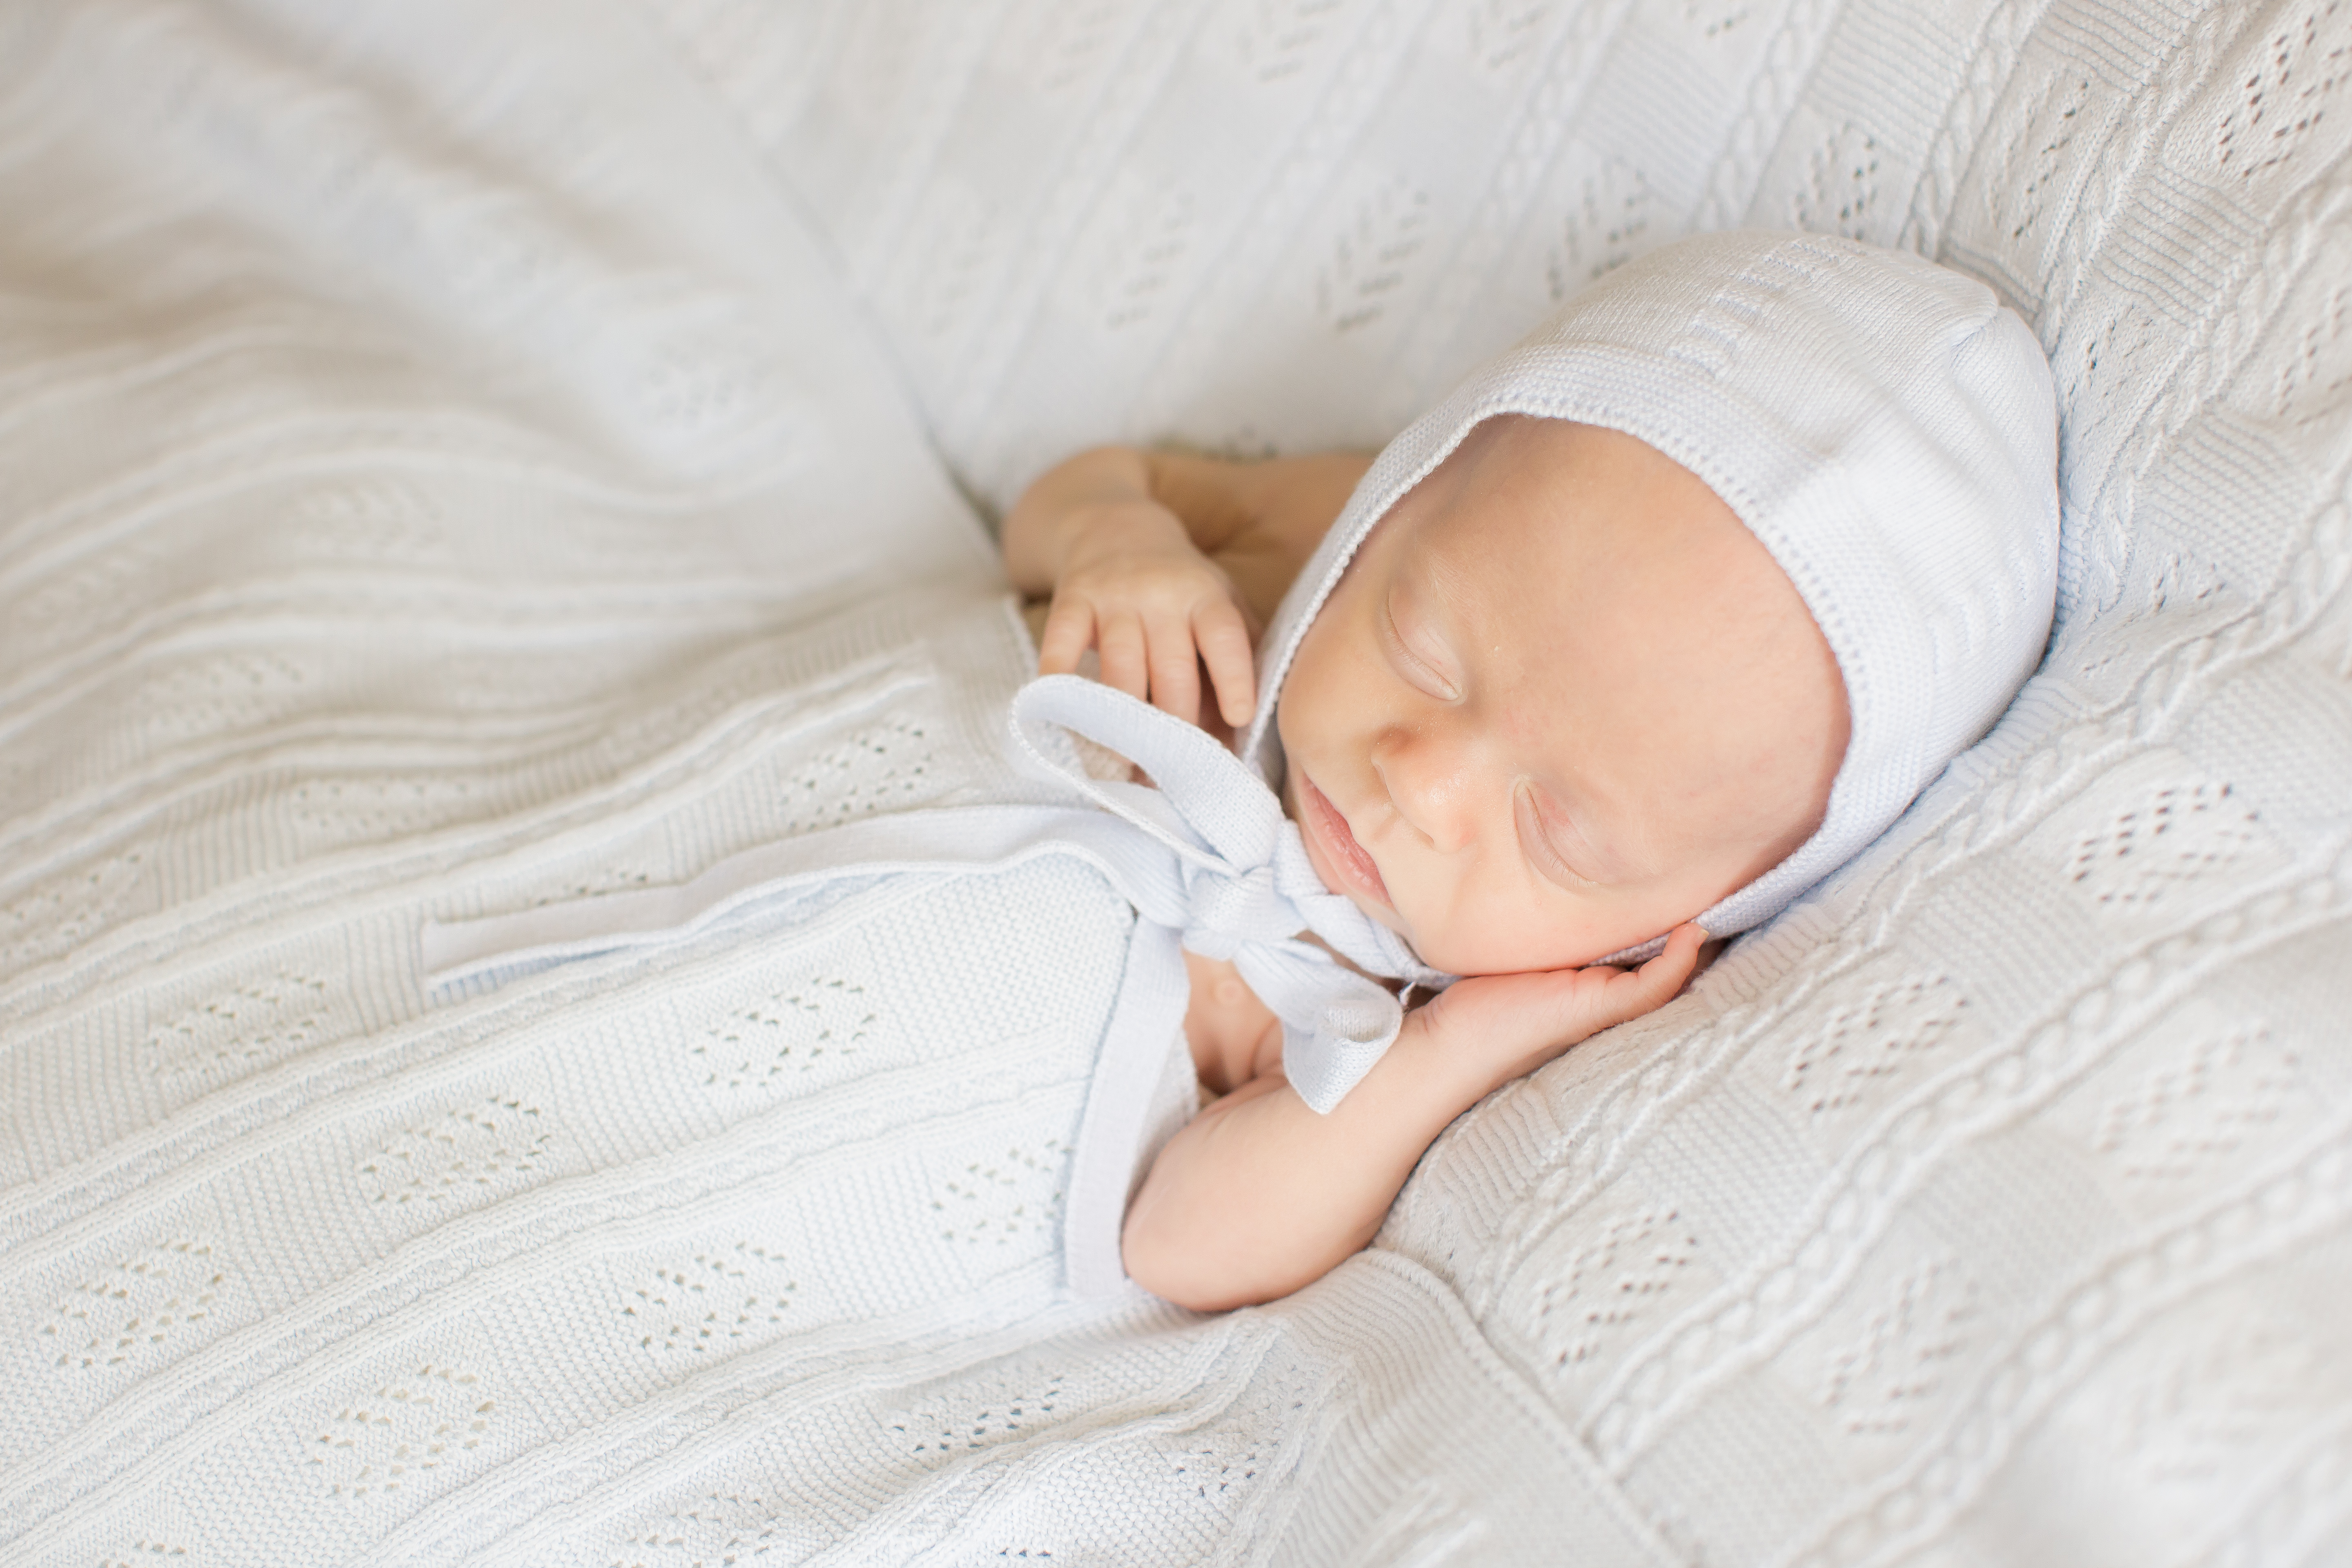 Newborn Photoshoot Guide